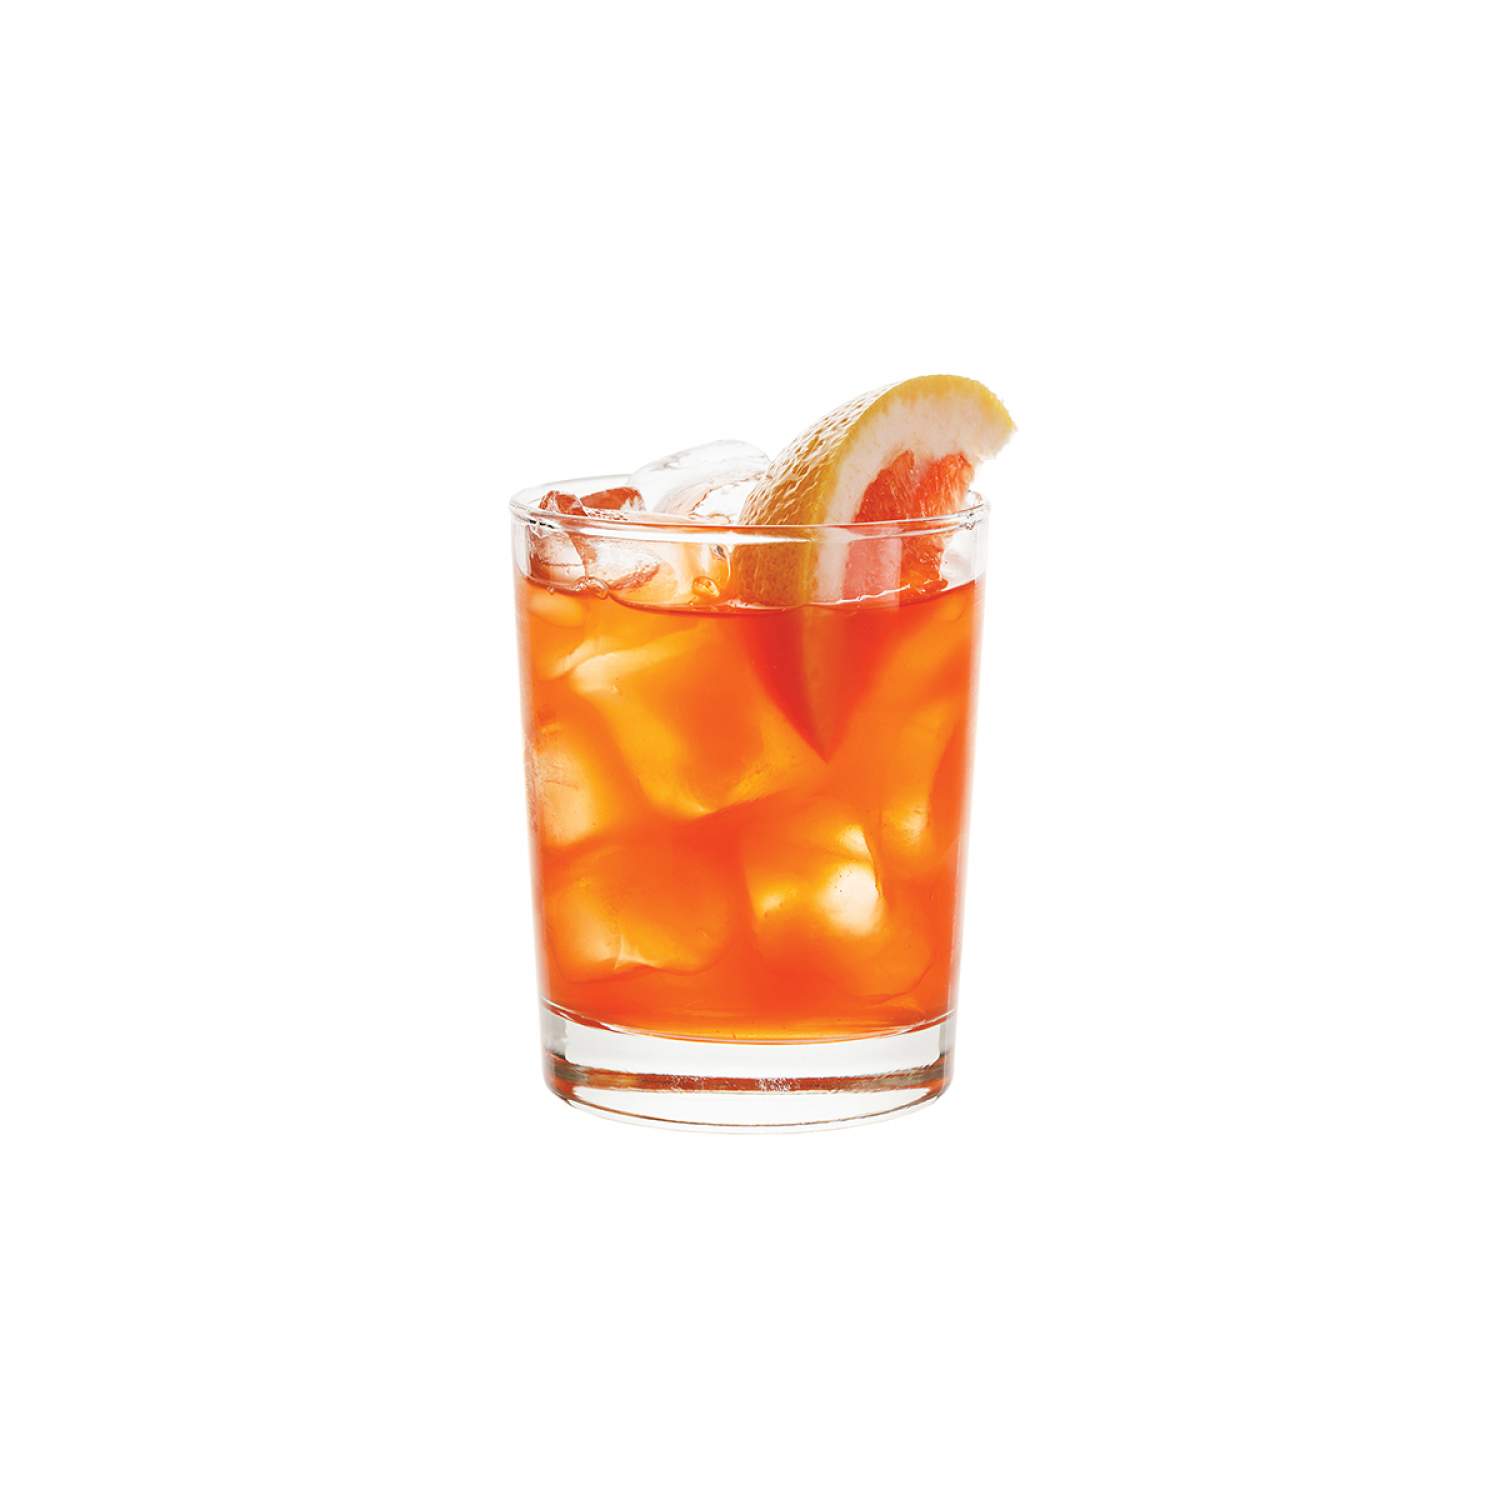 Panamien cocktail, the Chichita Panameña